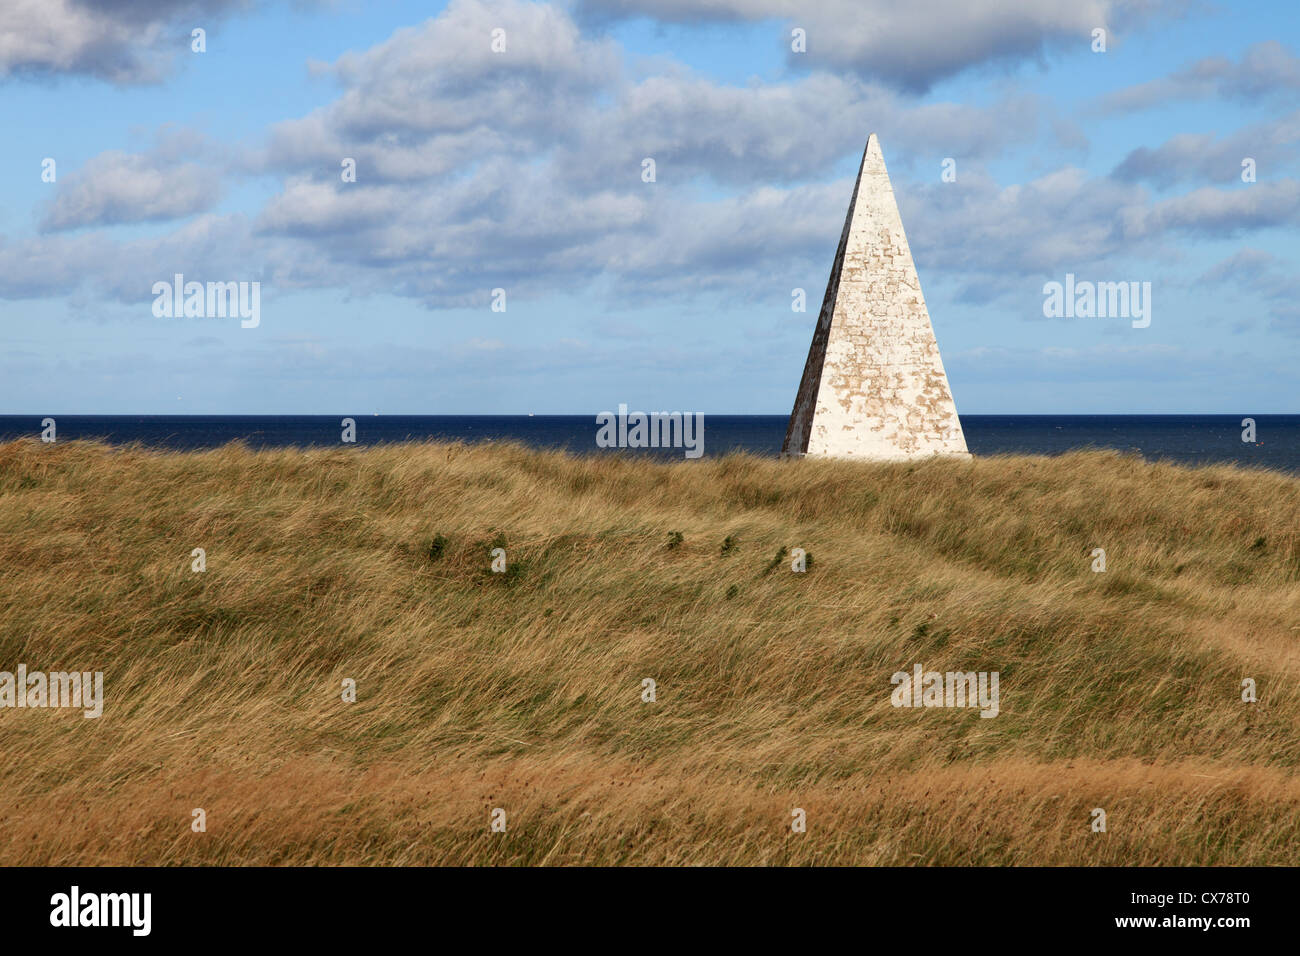 Pyramide blanche comme une aide à la navigation à Emmanuel Tête, Holy Island North East England UK Banque D'Images